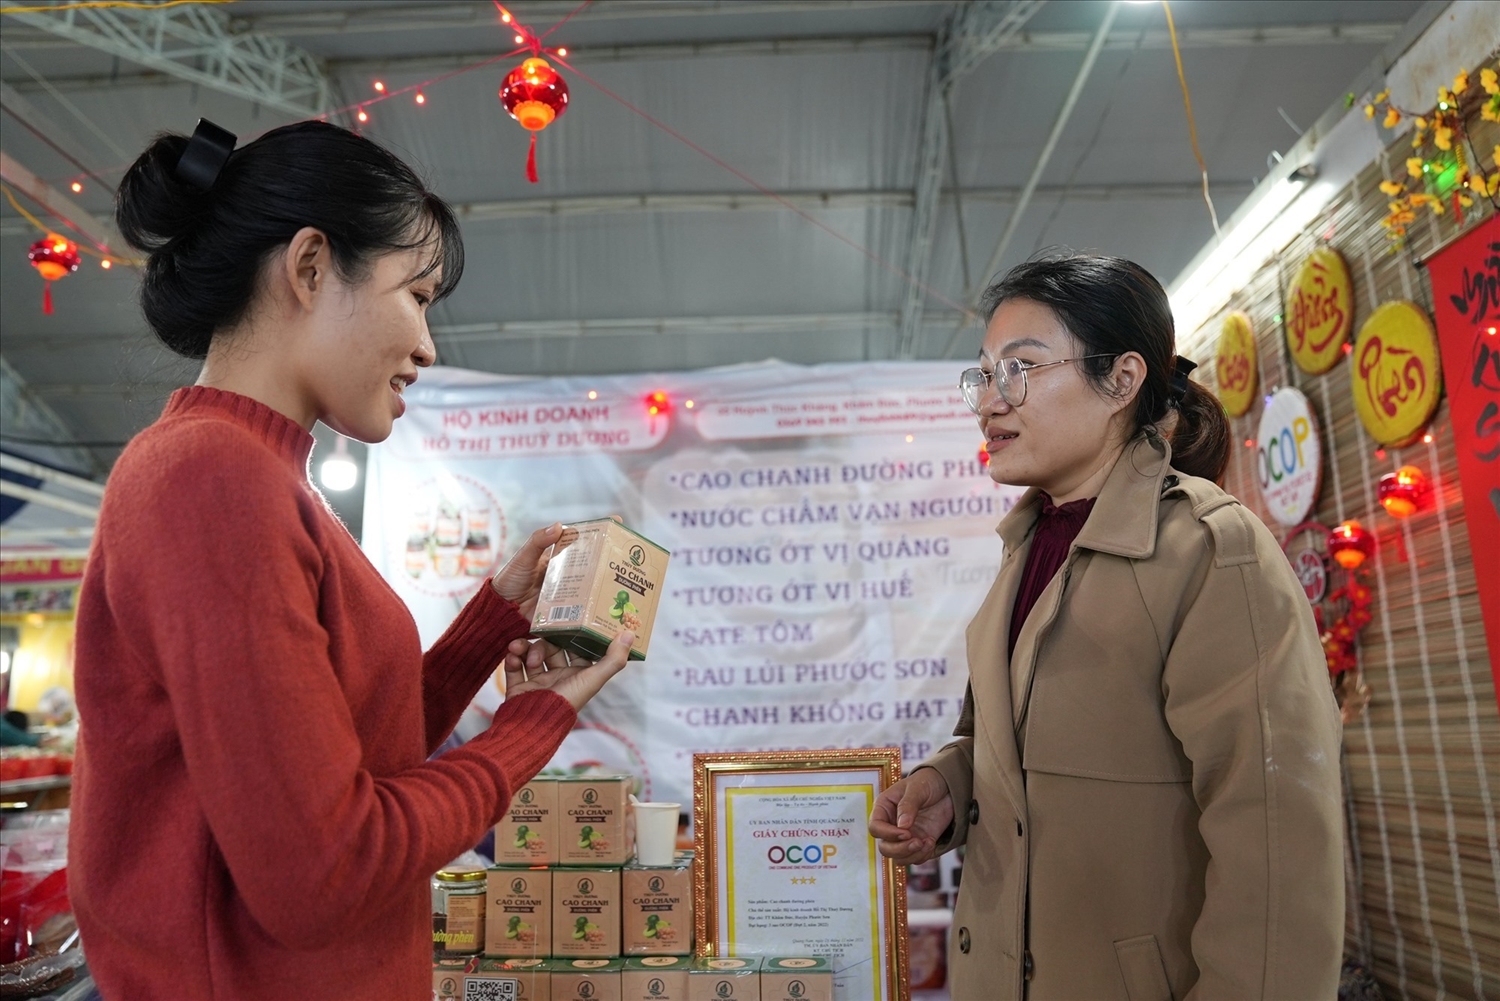 Chị Hồ Thị Thùy Linh (bên phải) giới thiệu sản phẩm cao chanh đường phèn mang tên Thùy Dương cho khách hàng. Ảnh: L.Q